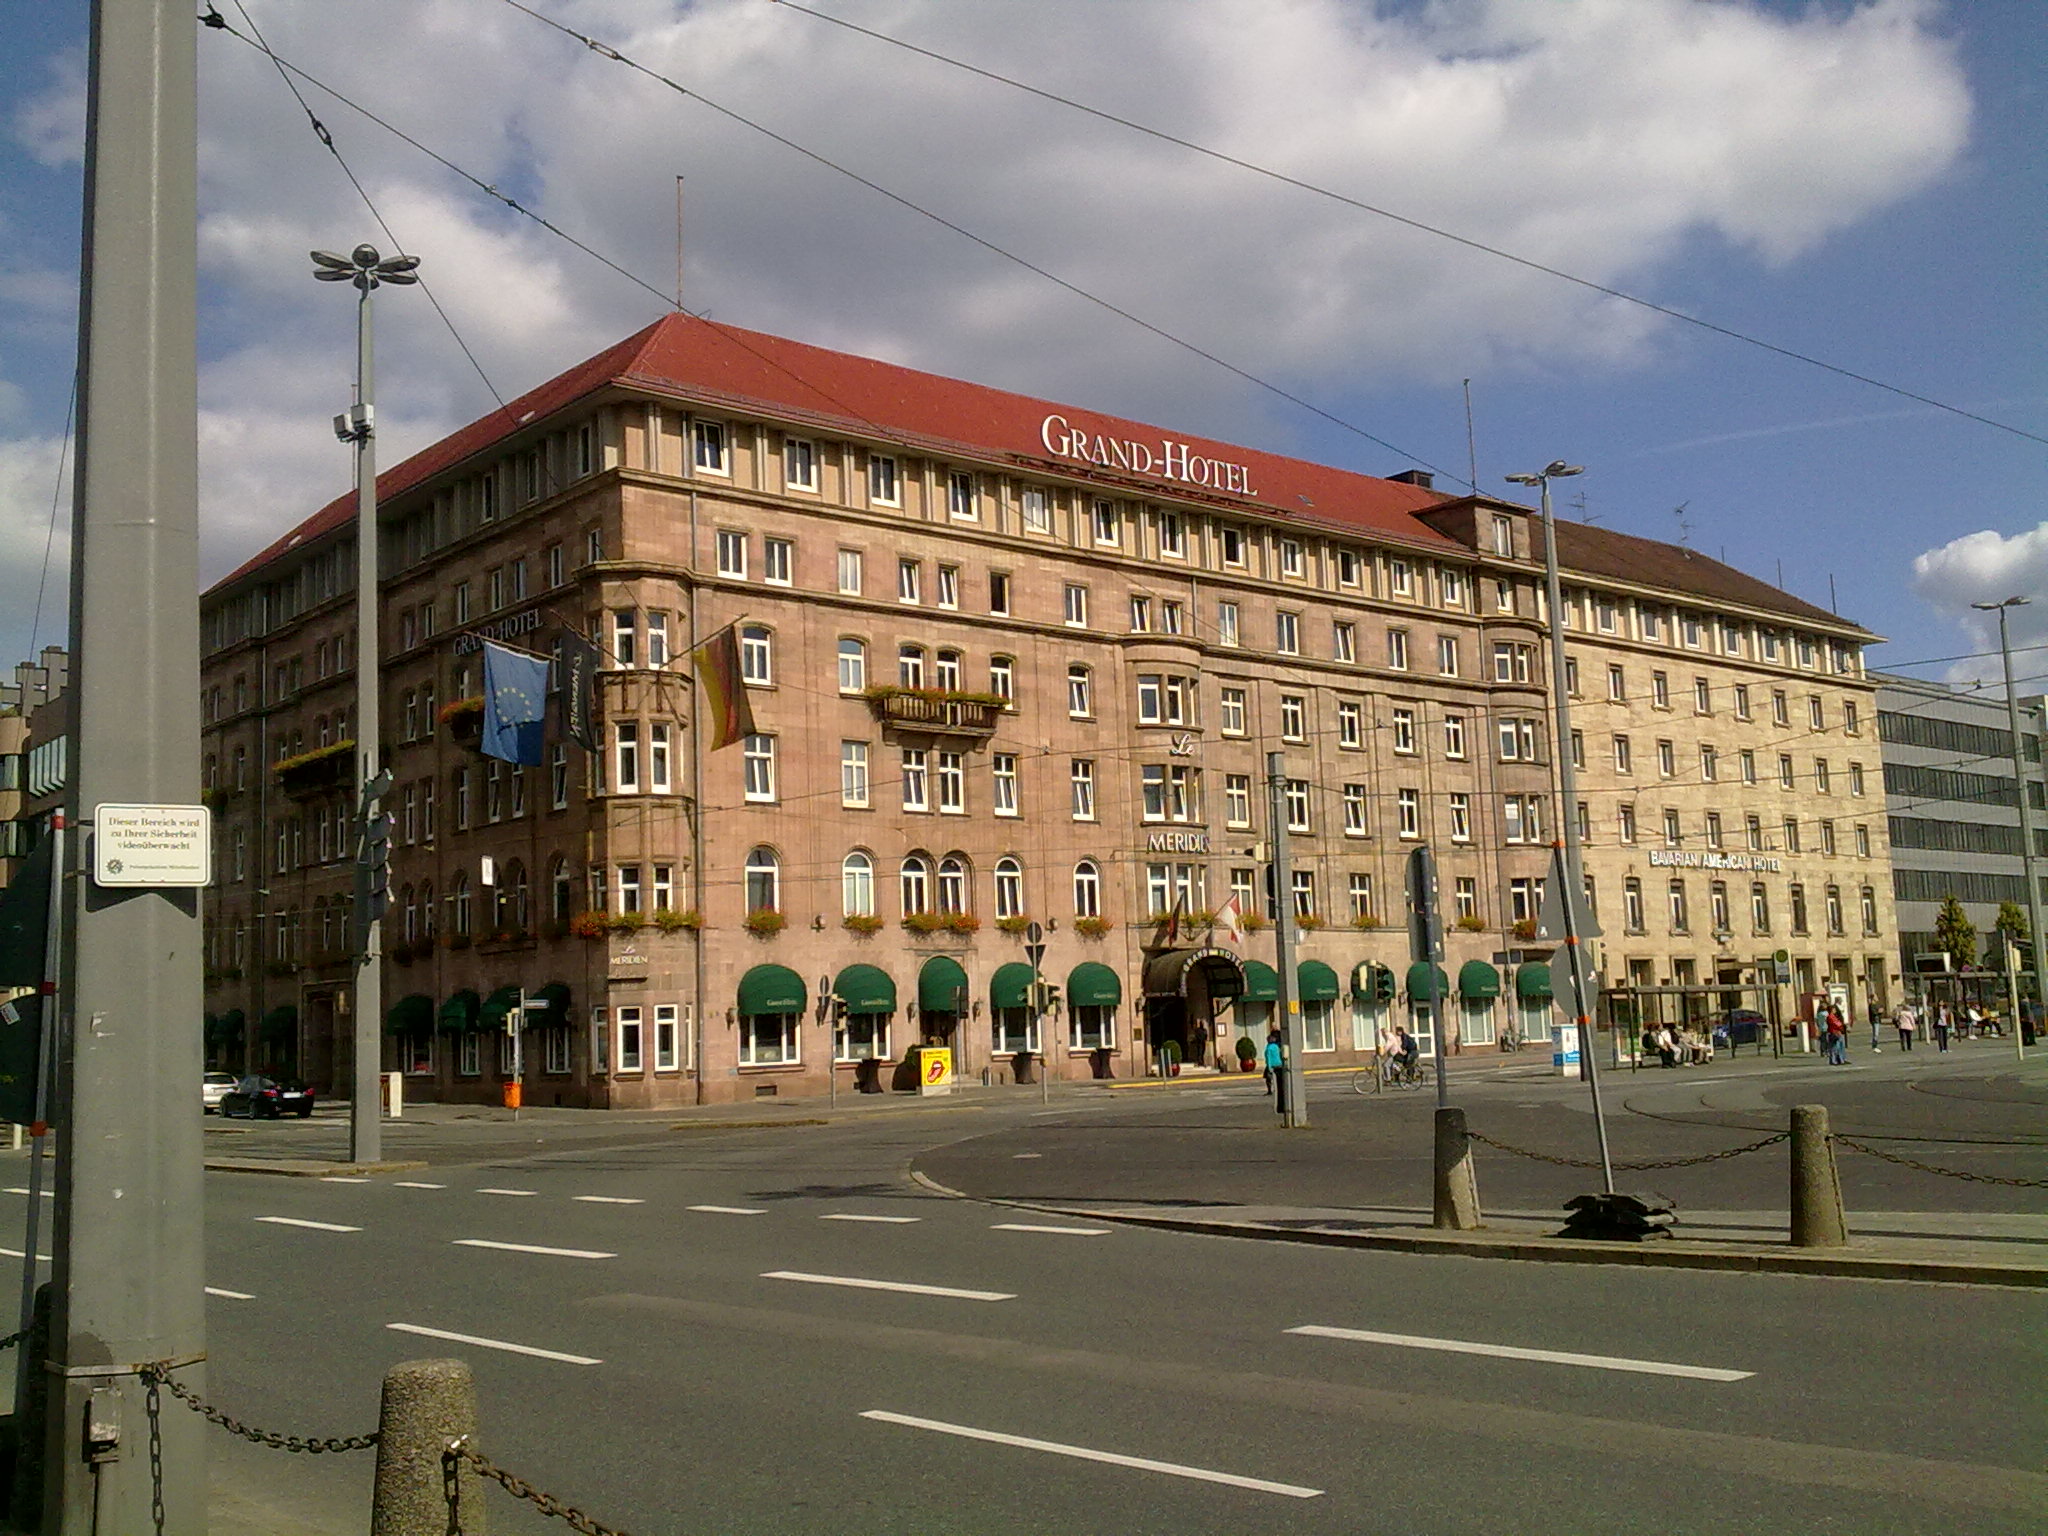 Grand Hotel in Nürnberg